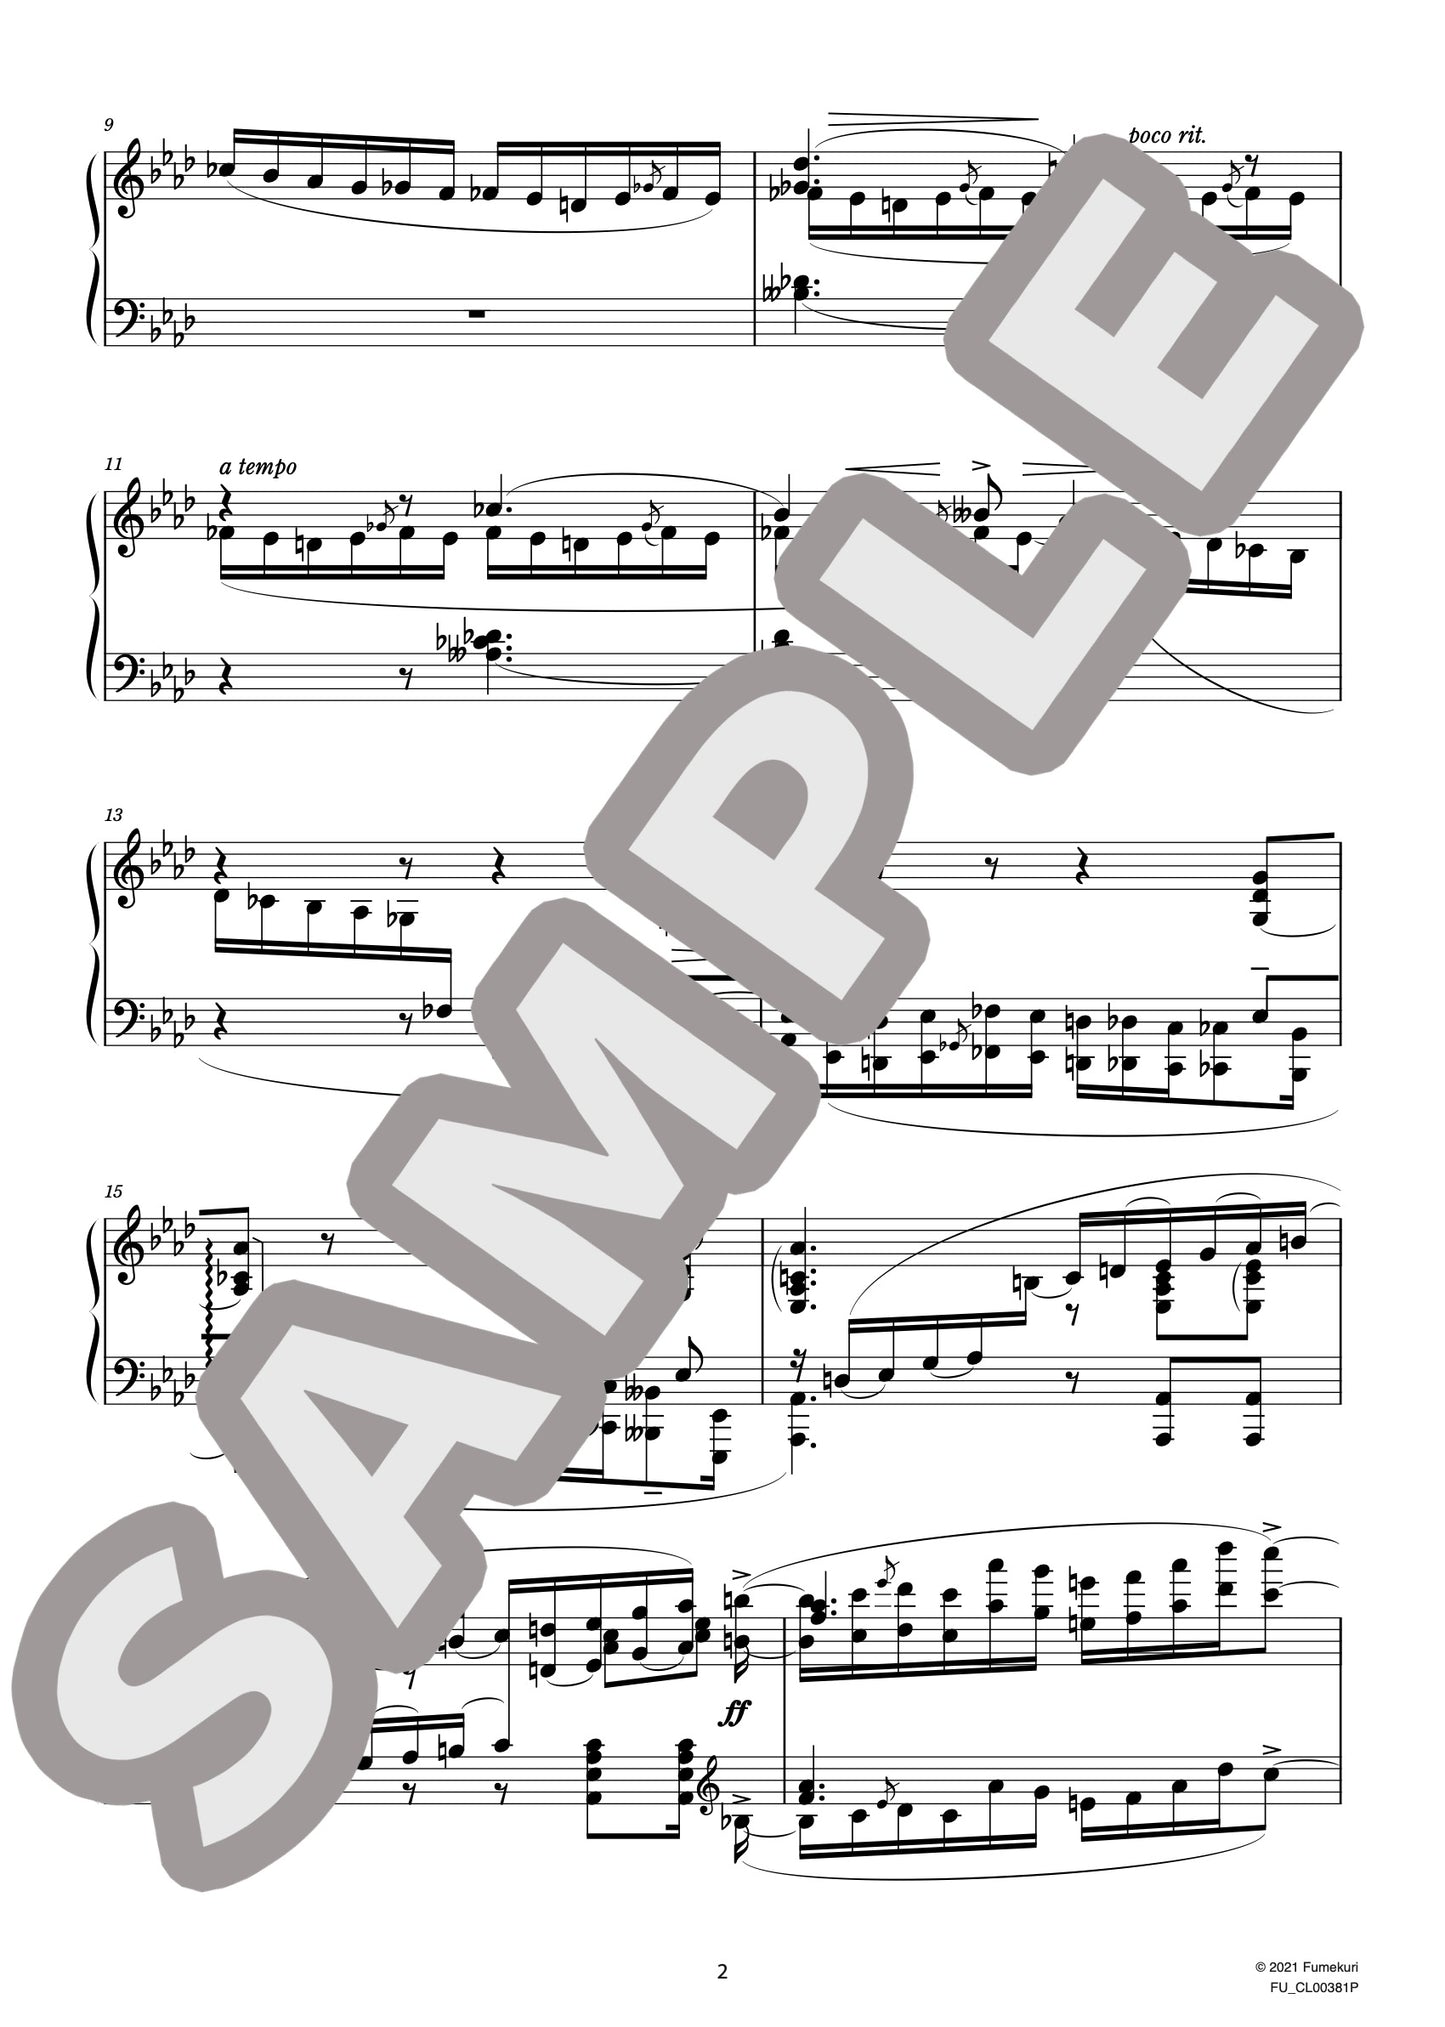 24のプレリュード（全調による前奏曲集）作品17 第18番（BLUMENFELD) / クラシック・オリジナル楽曲【中上級】